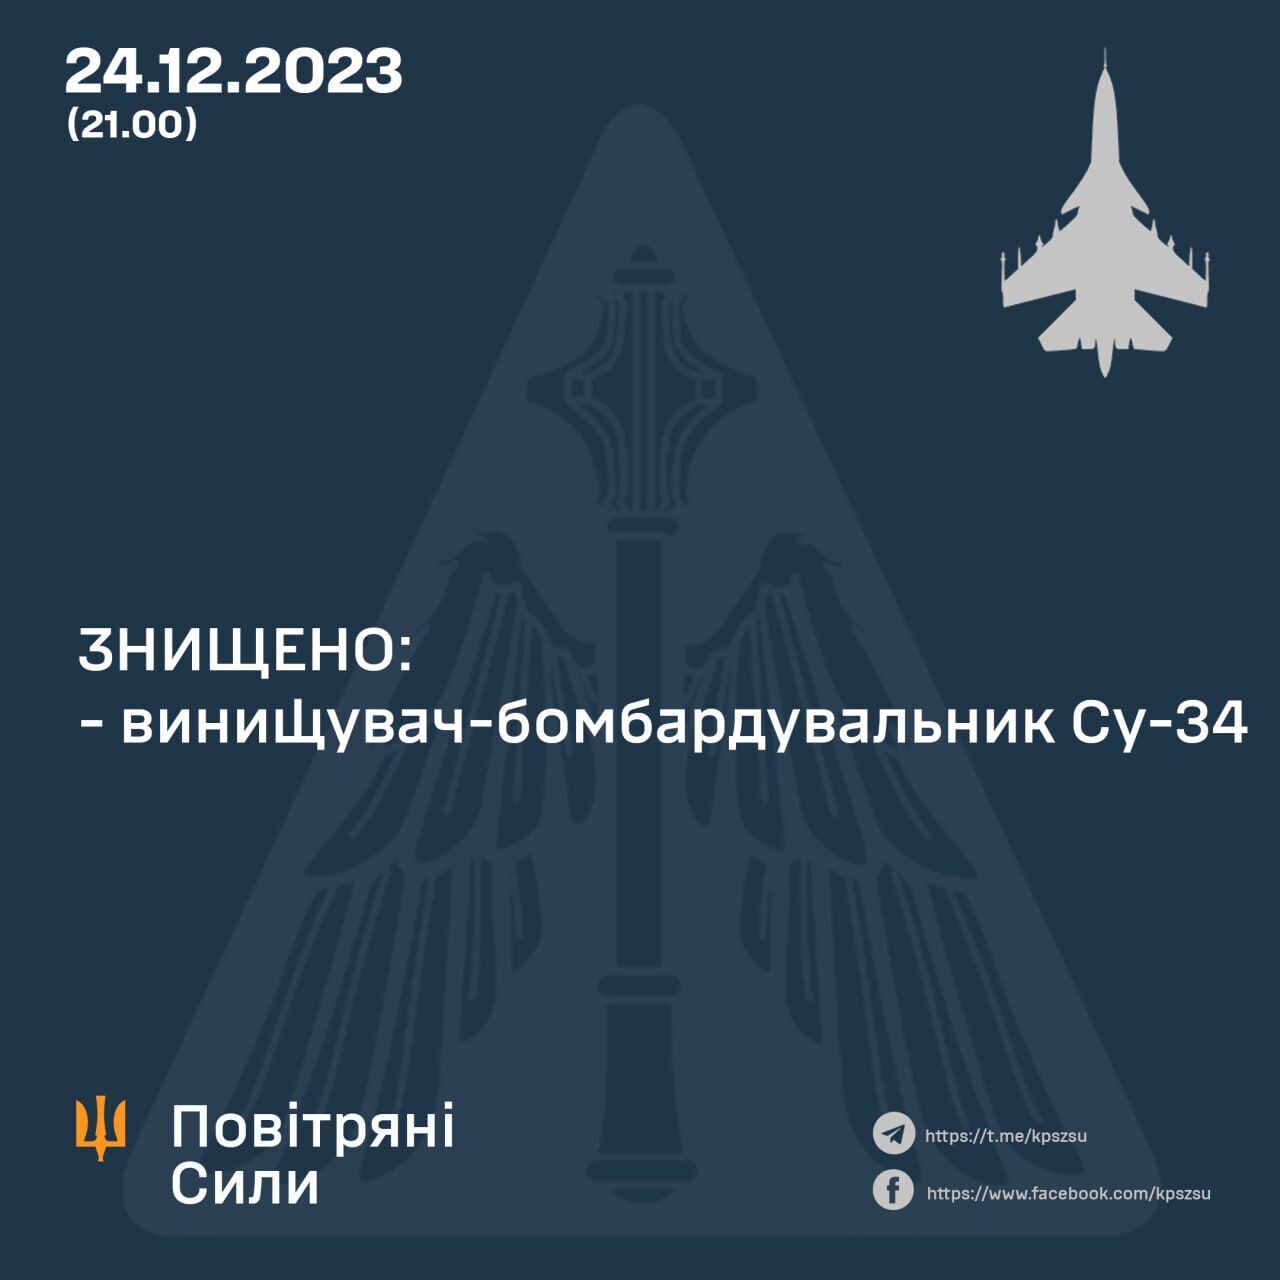 ВСУ сбили российский бомбардировщик Су-34, истребитель Су-30 под вопросом: подробности